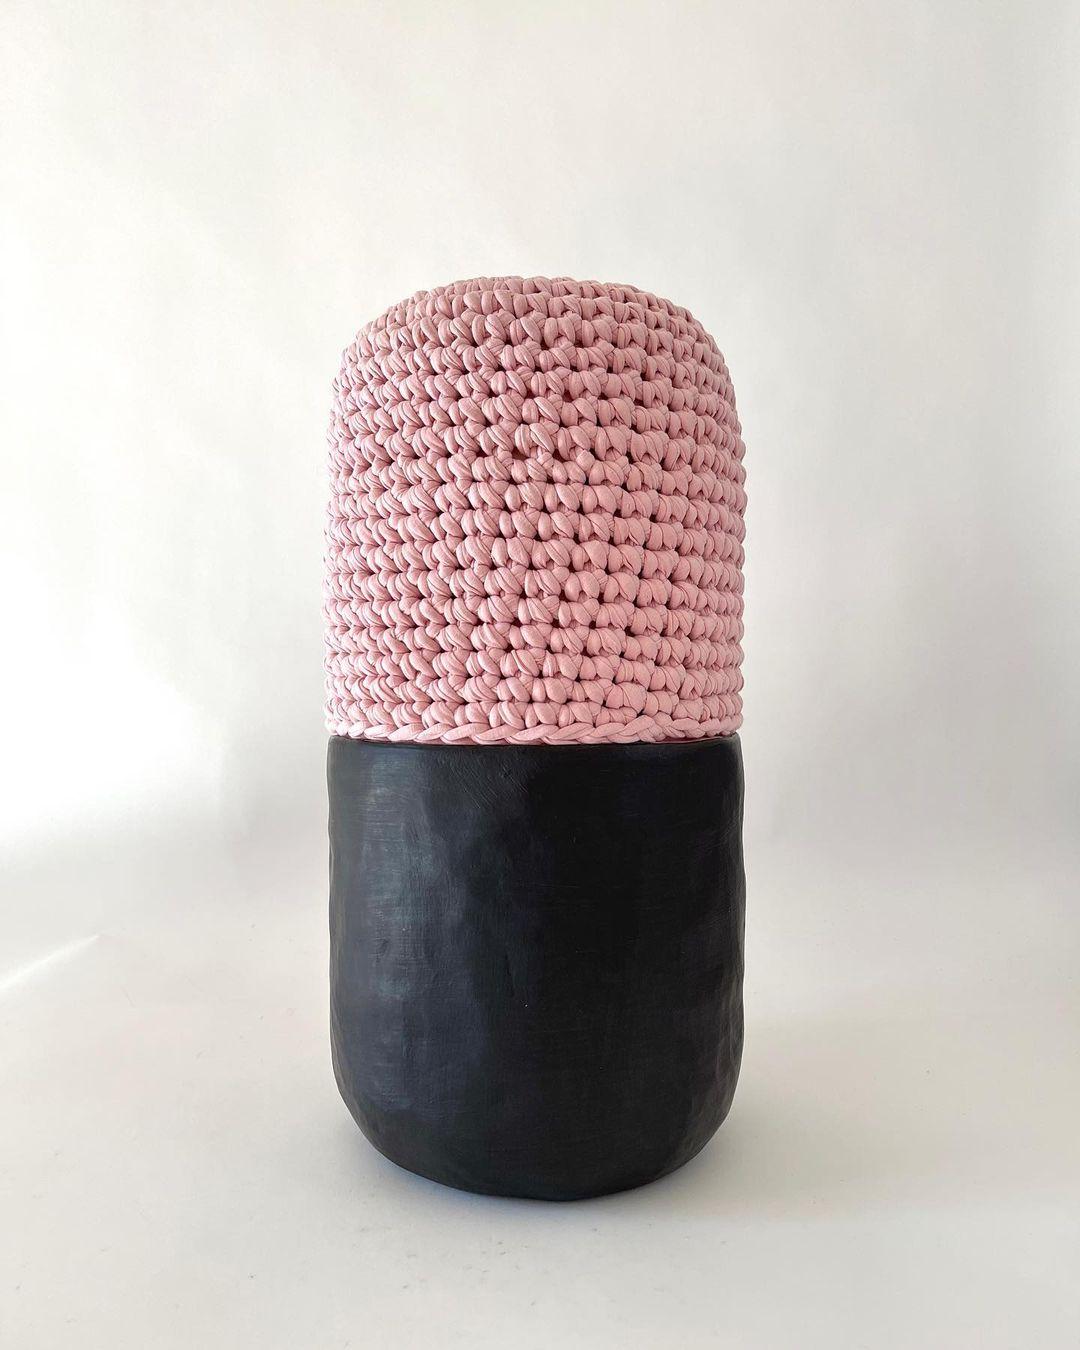 Pill-Hocker von Meg Morrison
Abmessungen: T 25 x H 47 cm (ungefähre Maße)
MATERIALIEN: Steingut, Reste von Textilfabriken.

Dieses Stück kann als Beistelltisch, Hocker oder einfach als Skulptur verwendet werden. Sie wird in Handarbeit aus